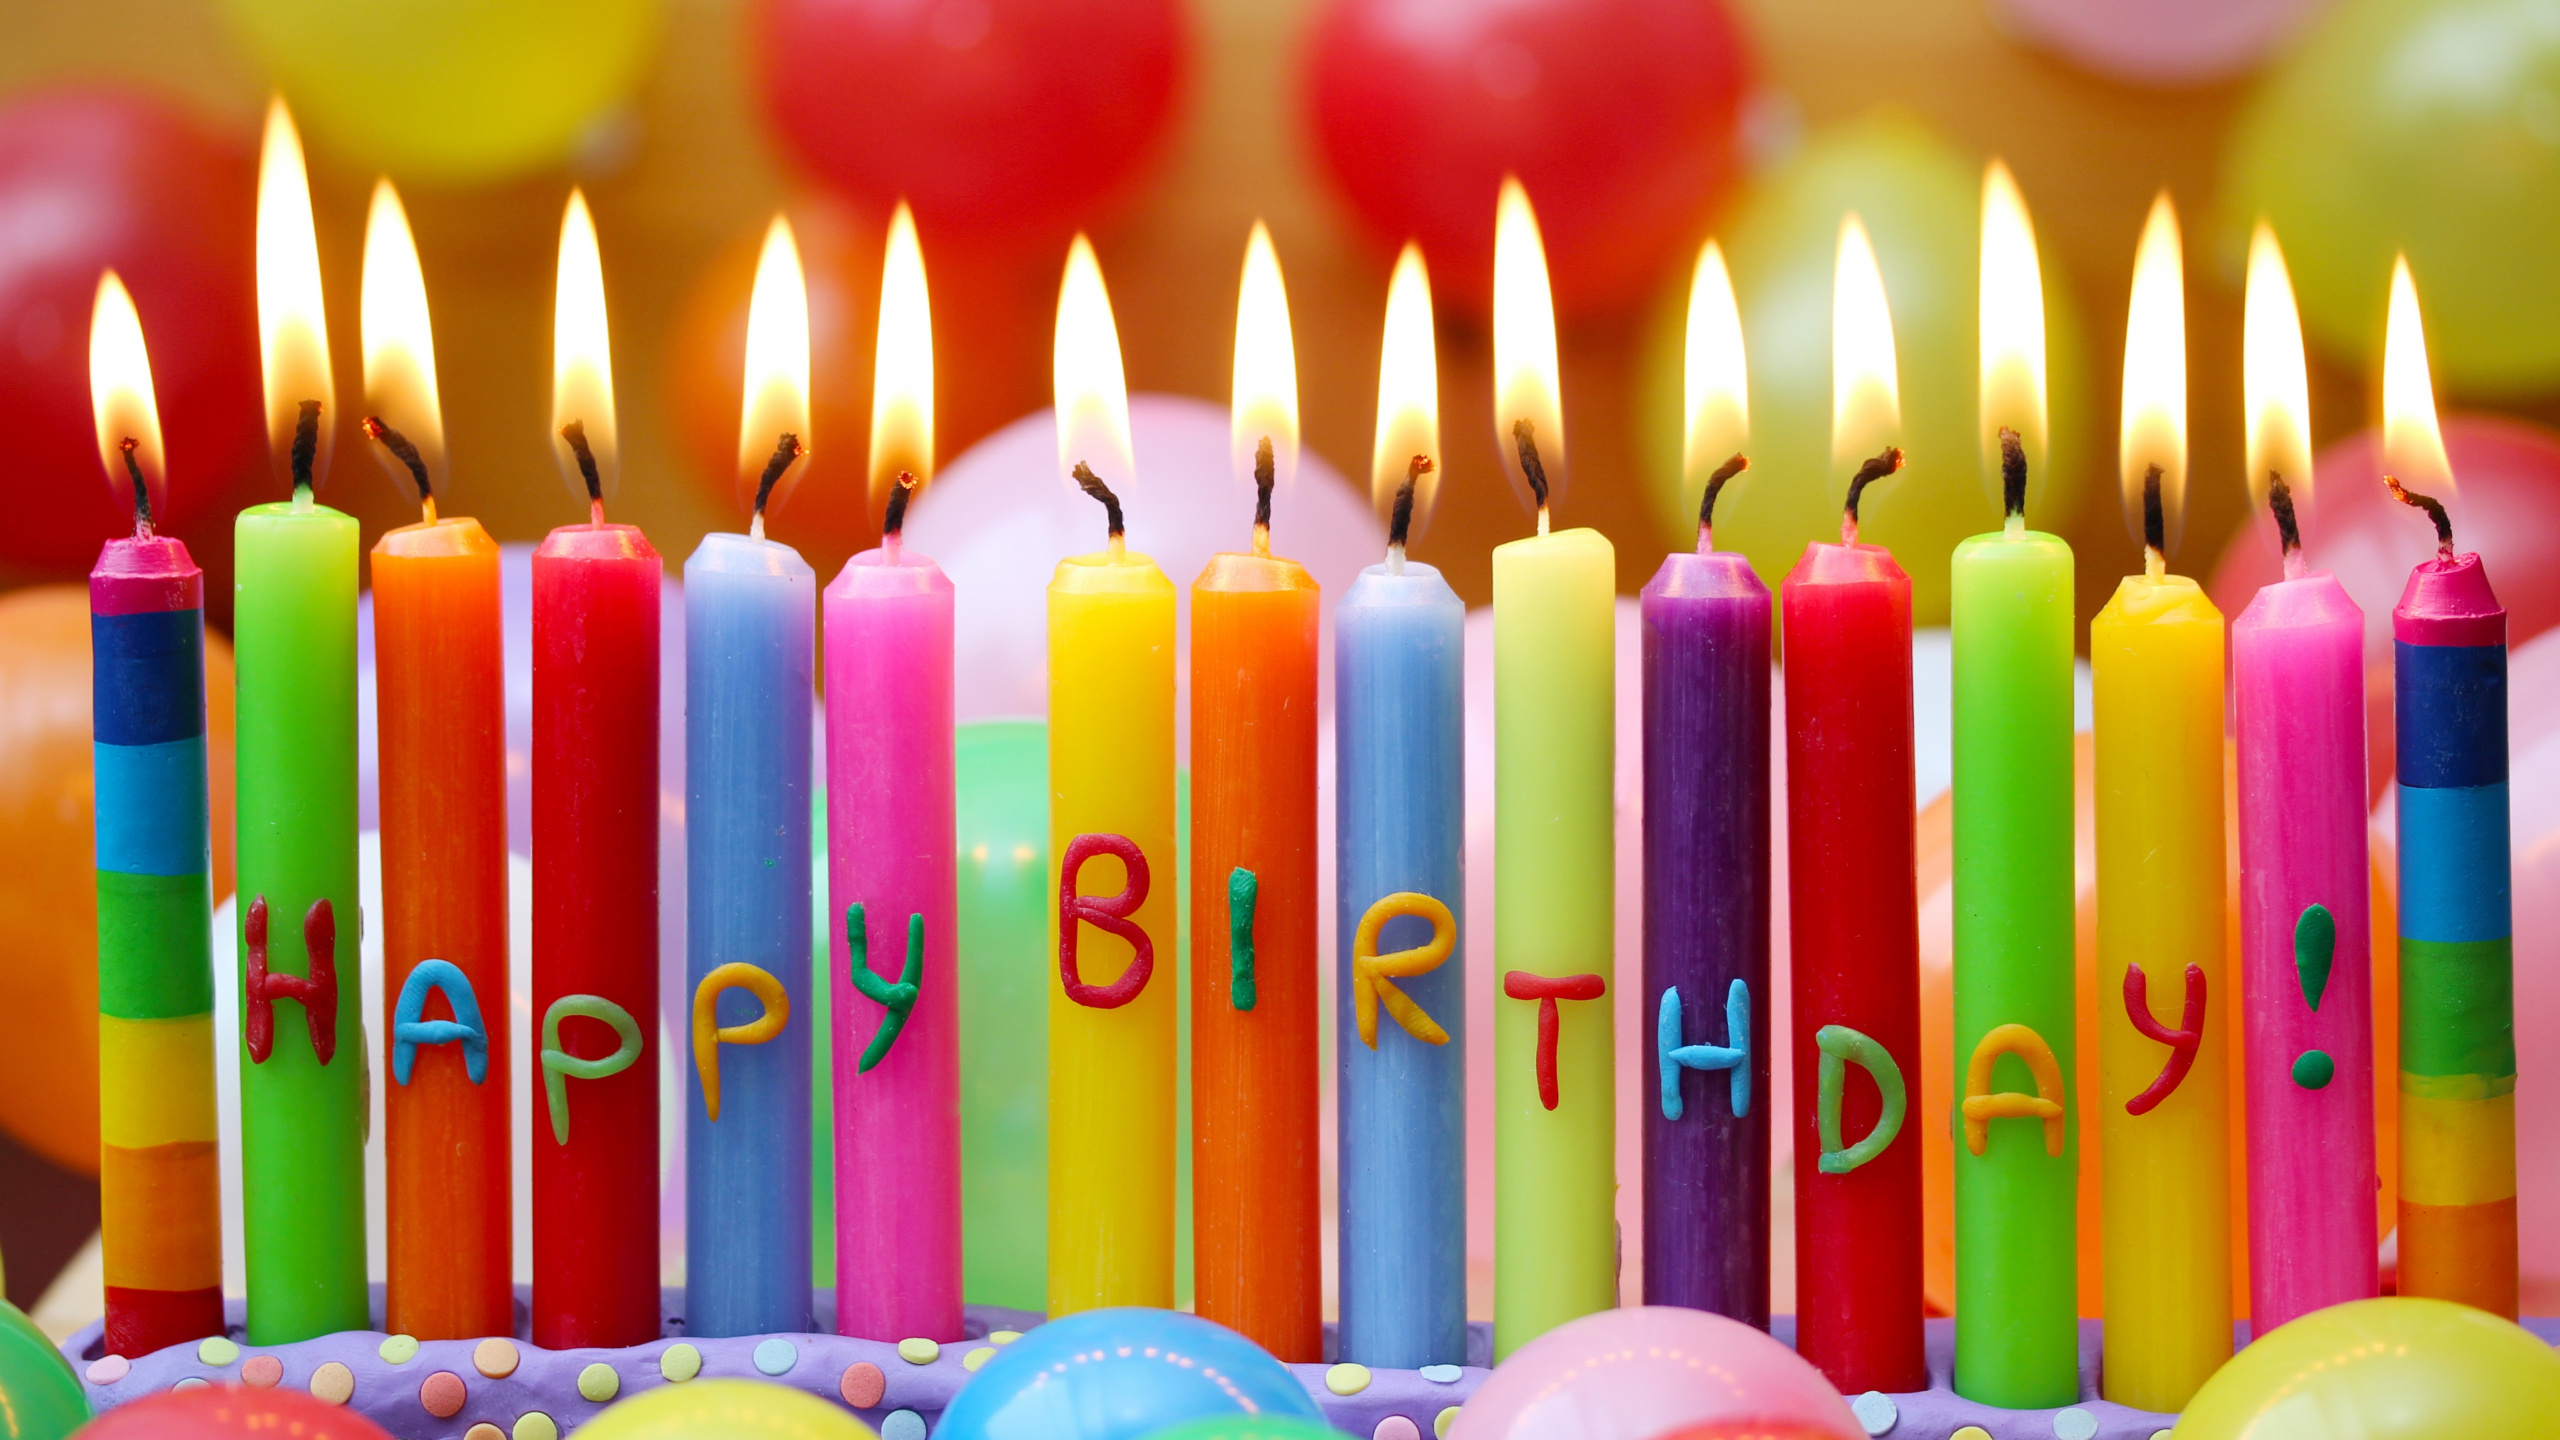 生日快乐, 生日, 缔约方, 生日蛋糕, 缔约方供应 壁纸 2560x1440 允许